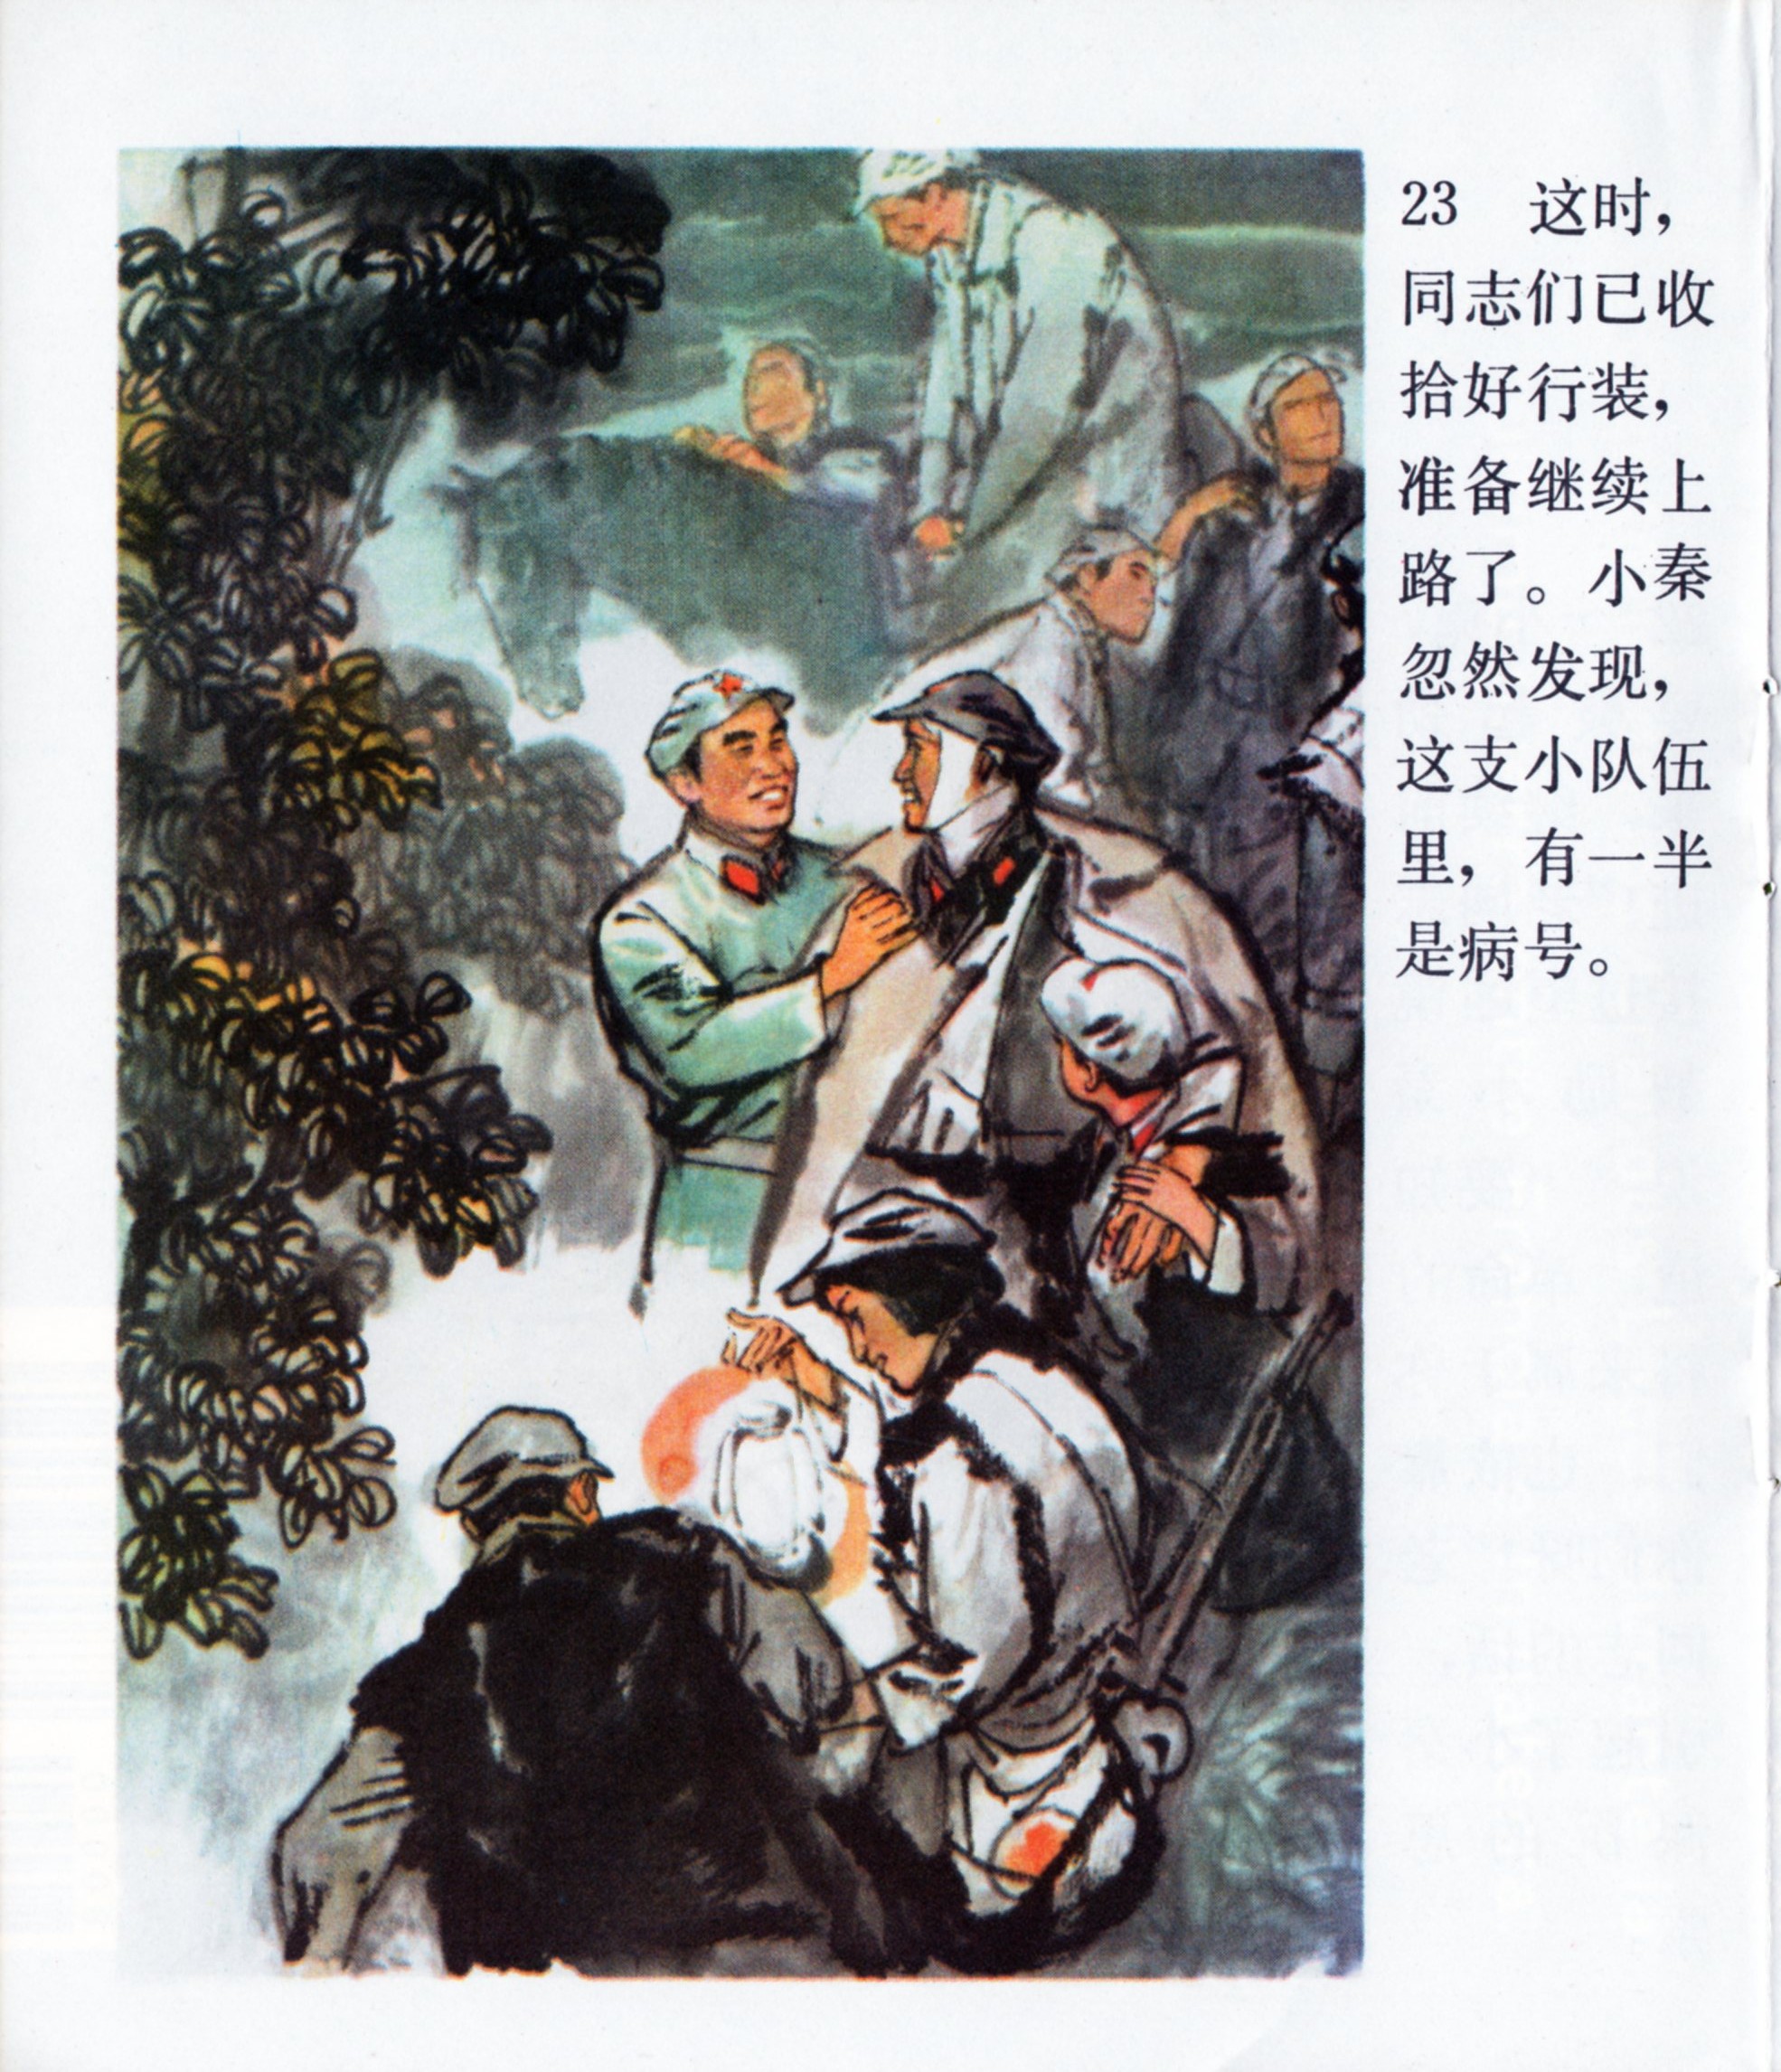 彩色连环画《肩膀》，讲述红军长征途中朱德总司令的两个故事